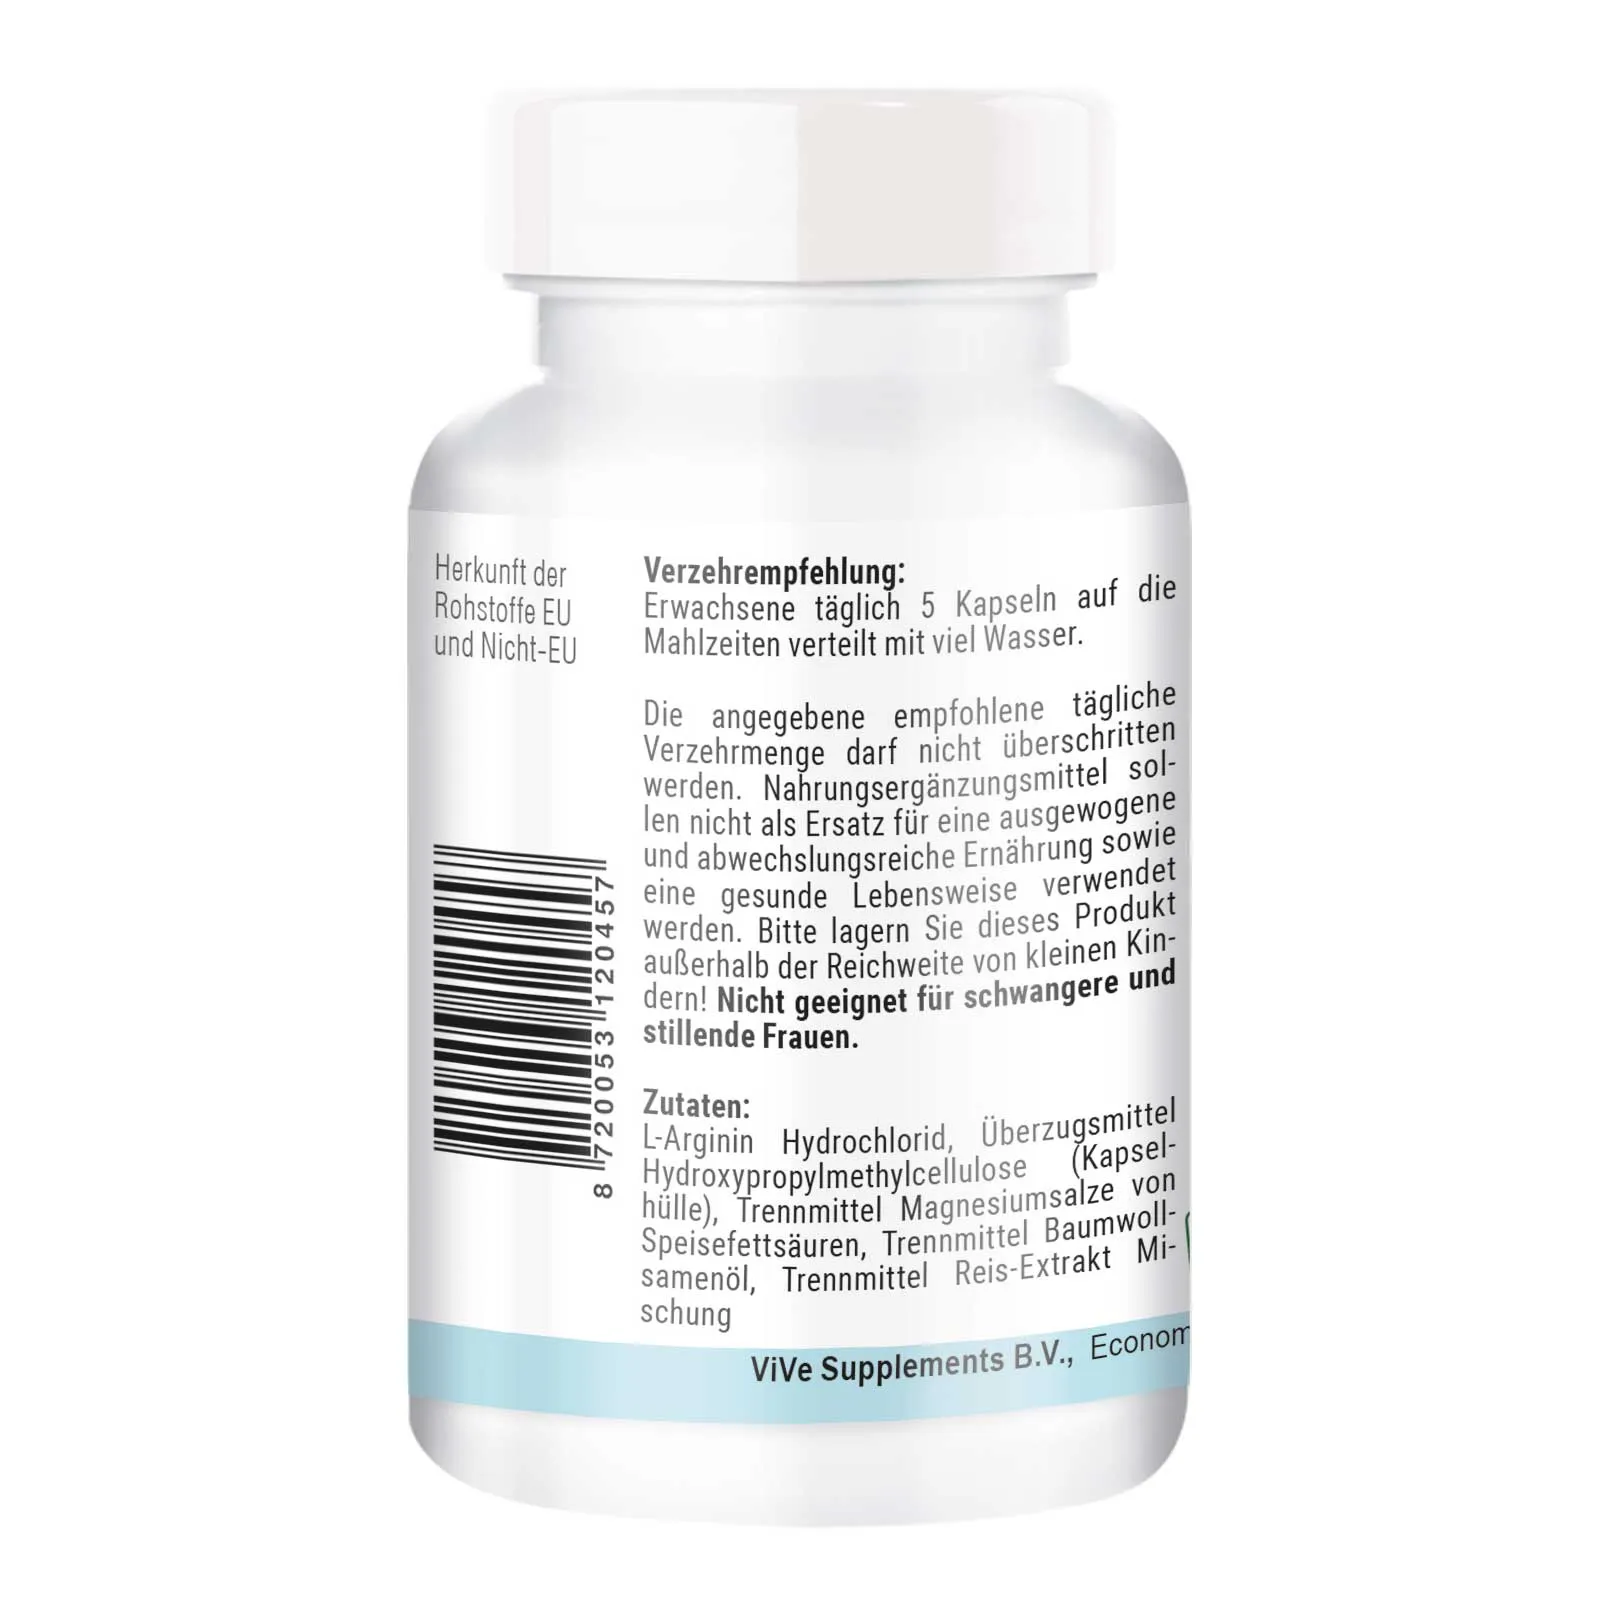 L-Arginina 900 mg